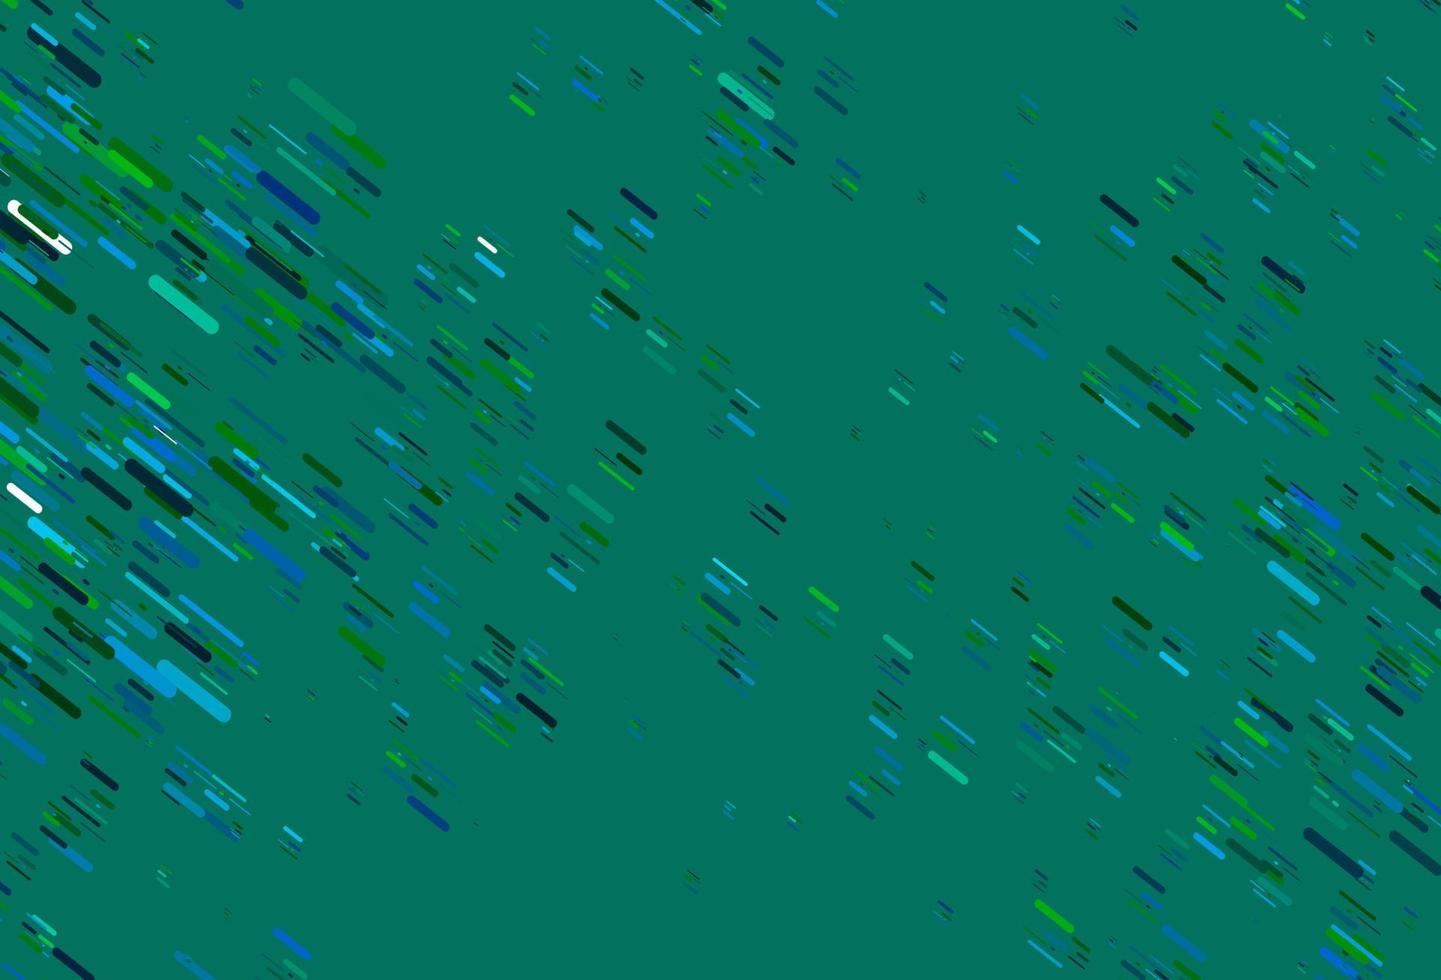 hellblaue, grüne Vektortextur mit bunten Linien. vektor